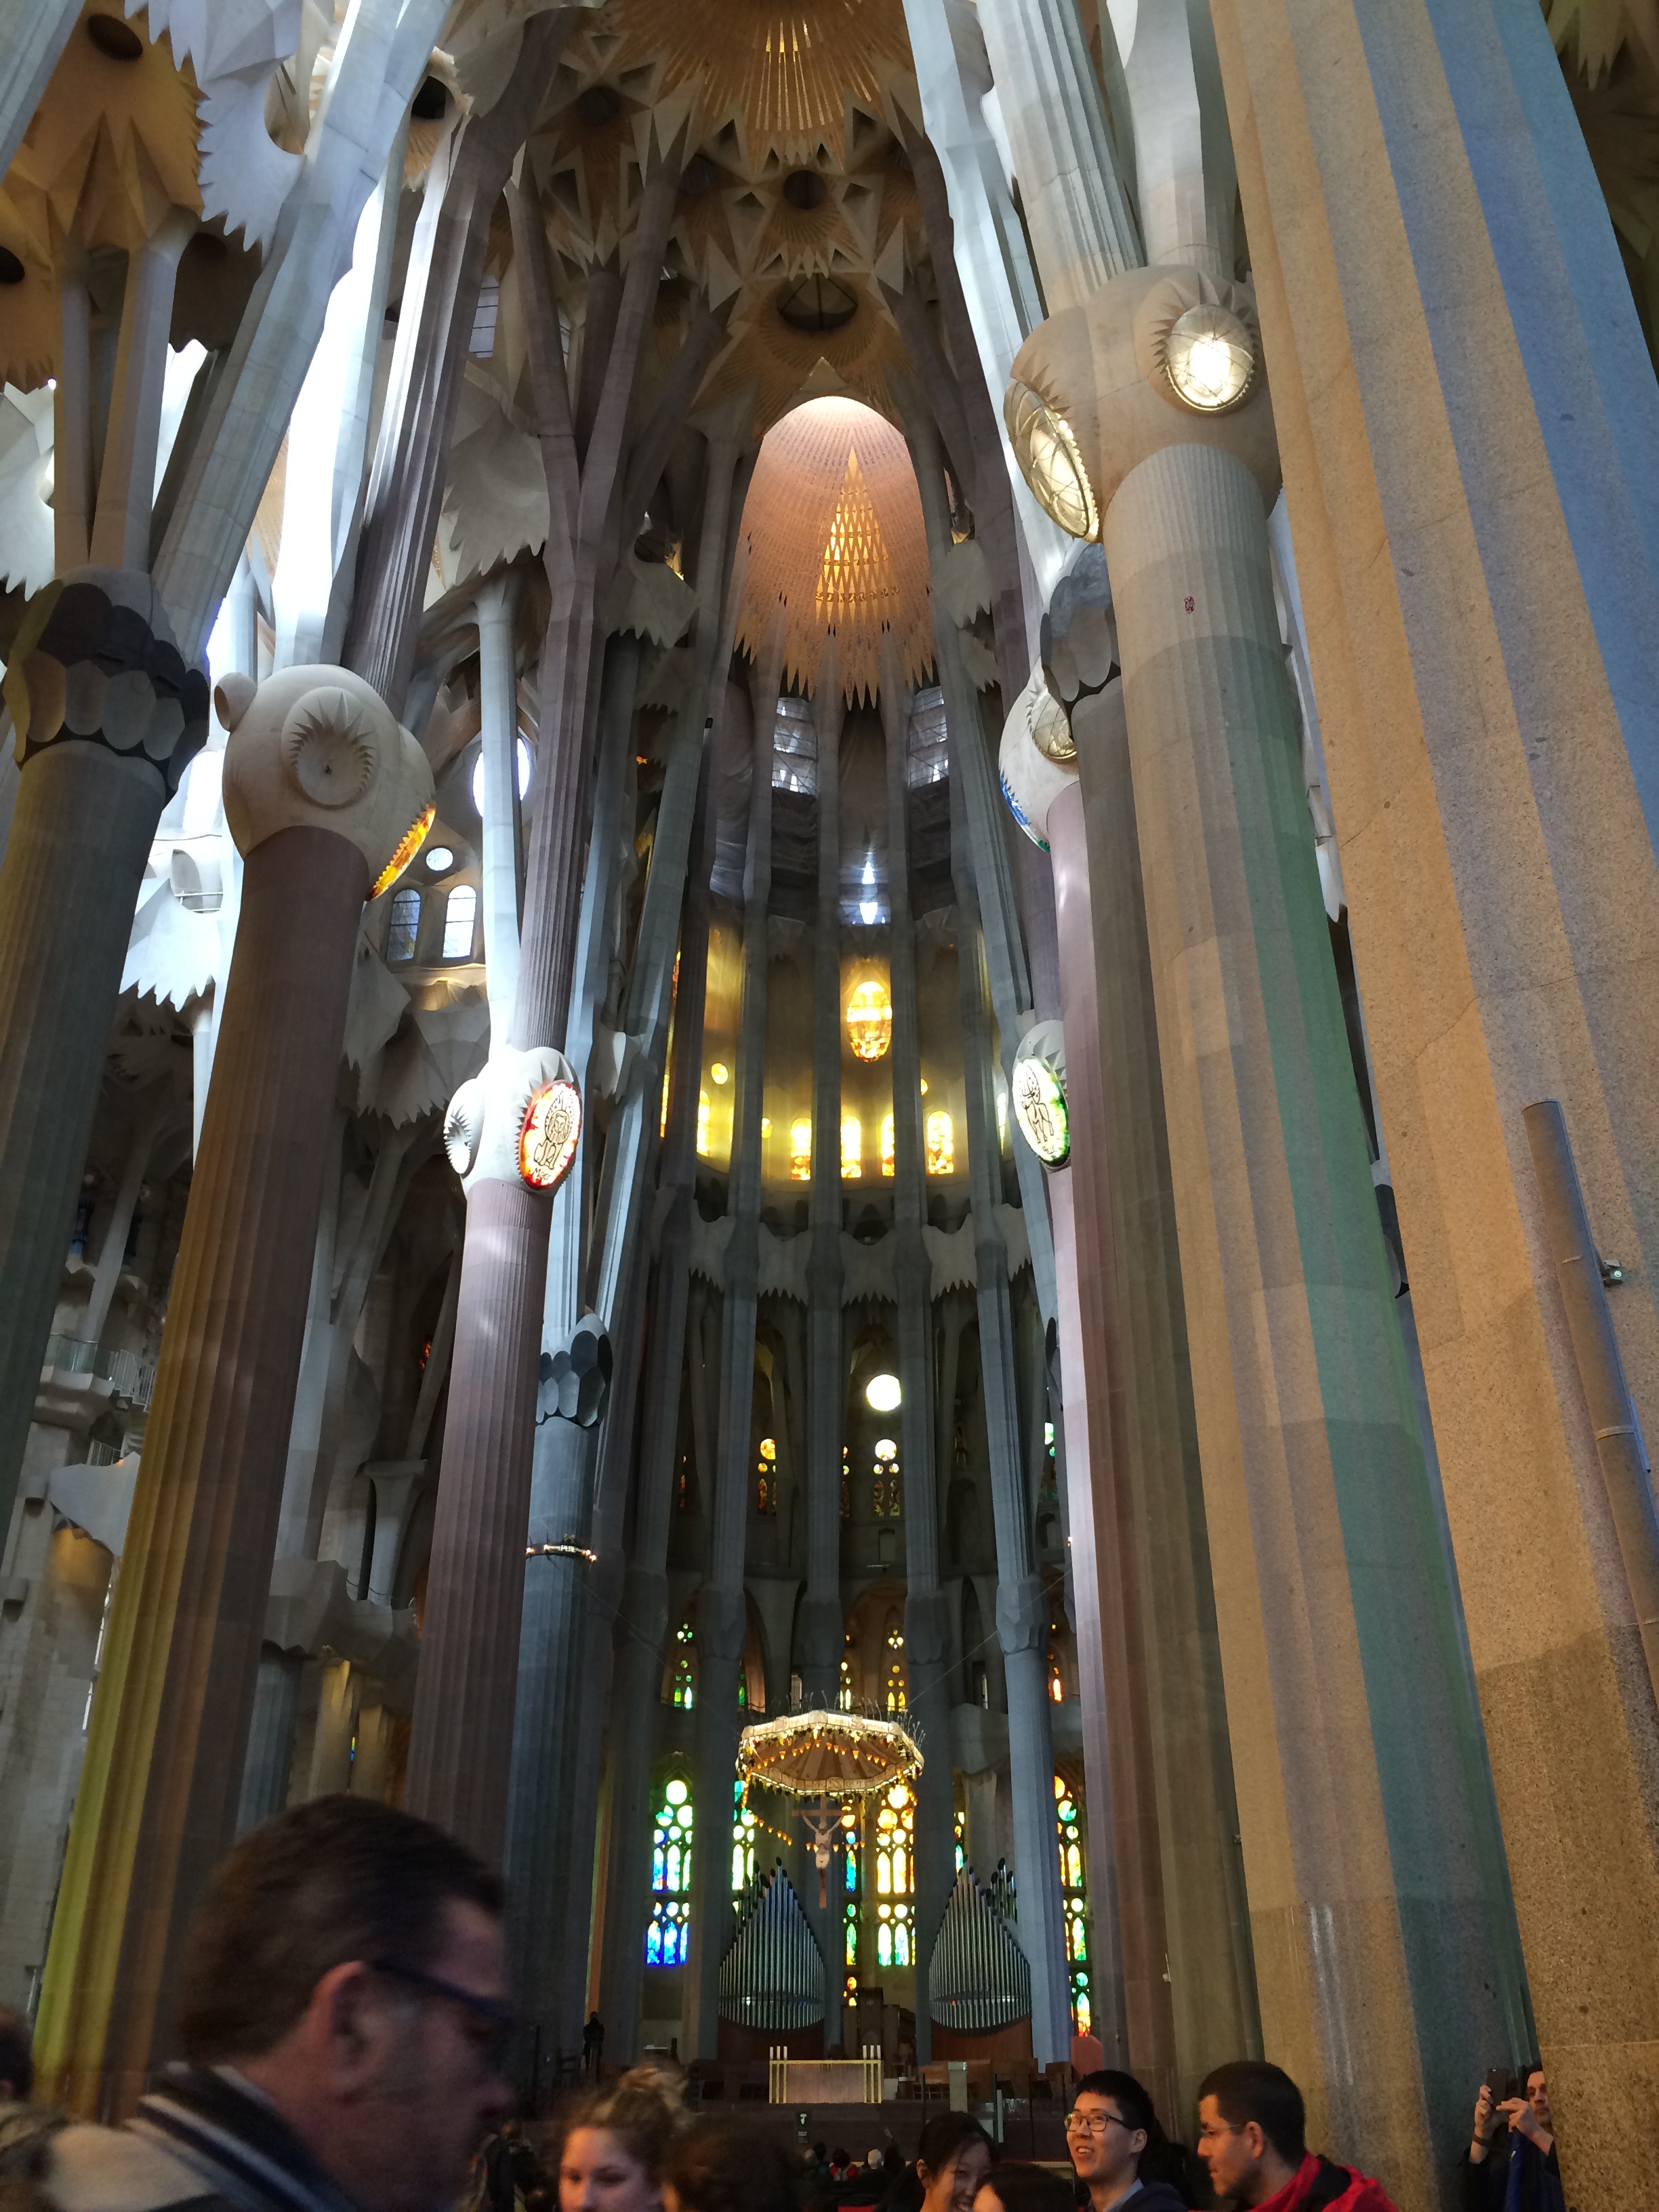 Image inside the Sagrada Familia